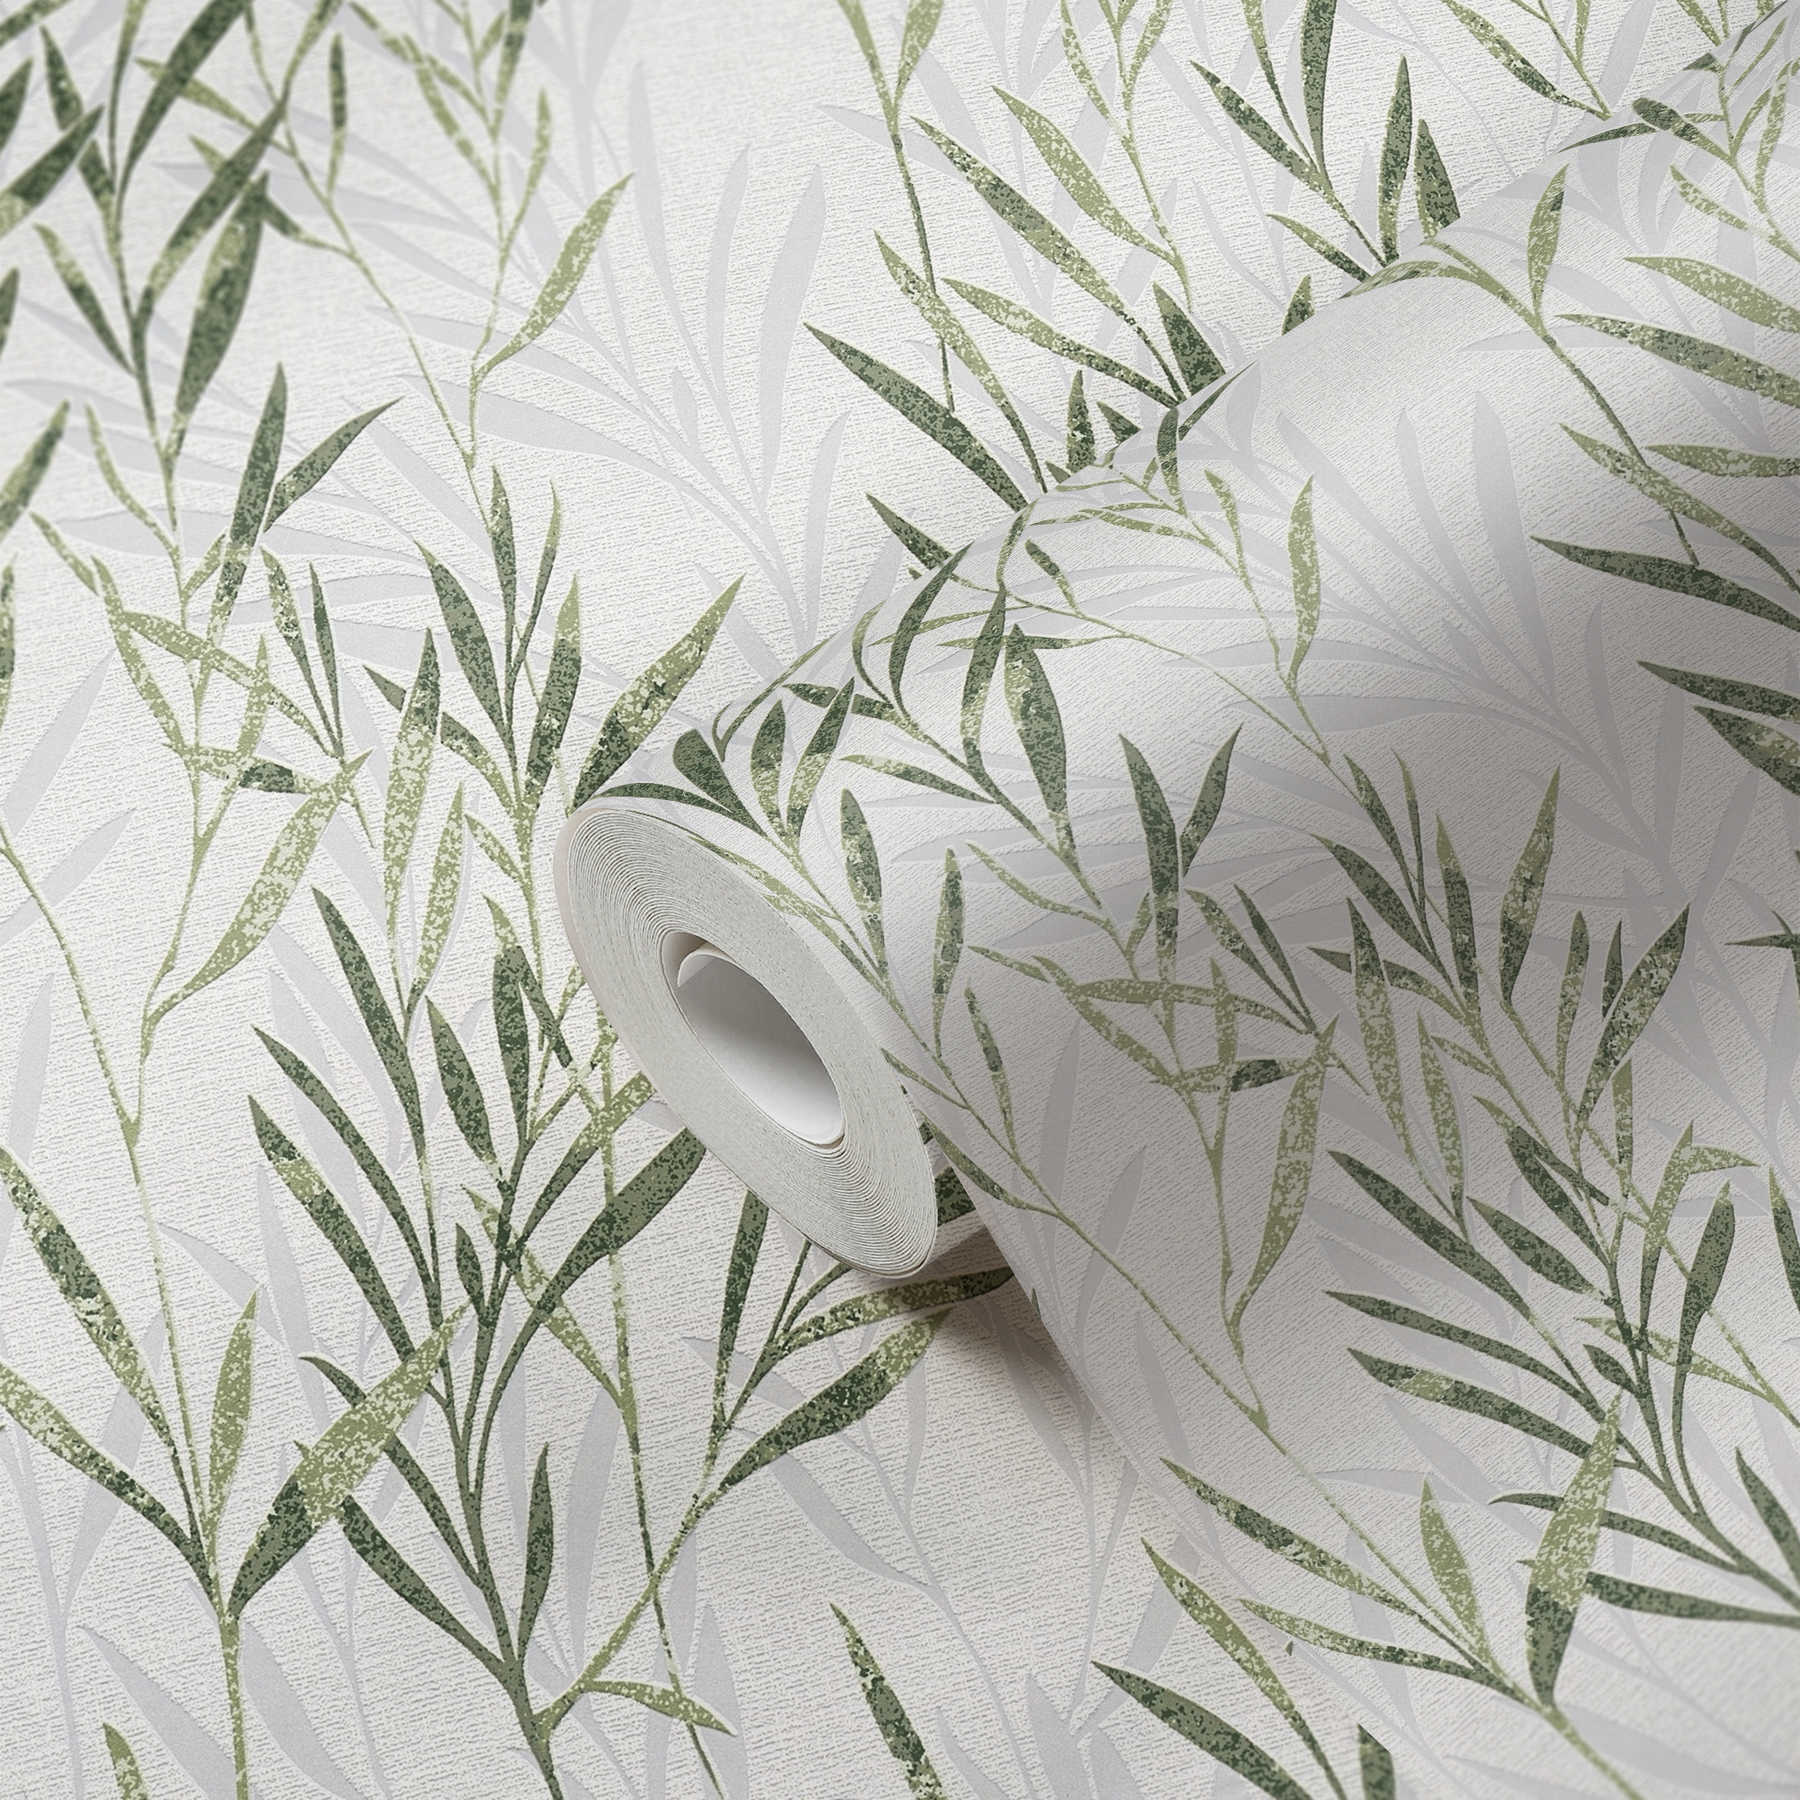             Papel pintado no tejido con diseño de hojas y zarcillos - verde, blanco
        